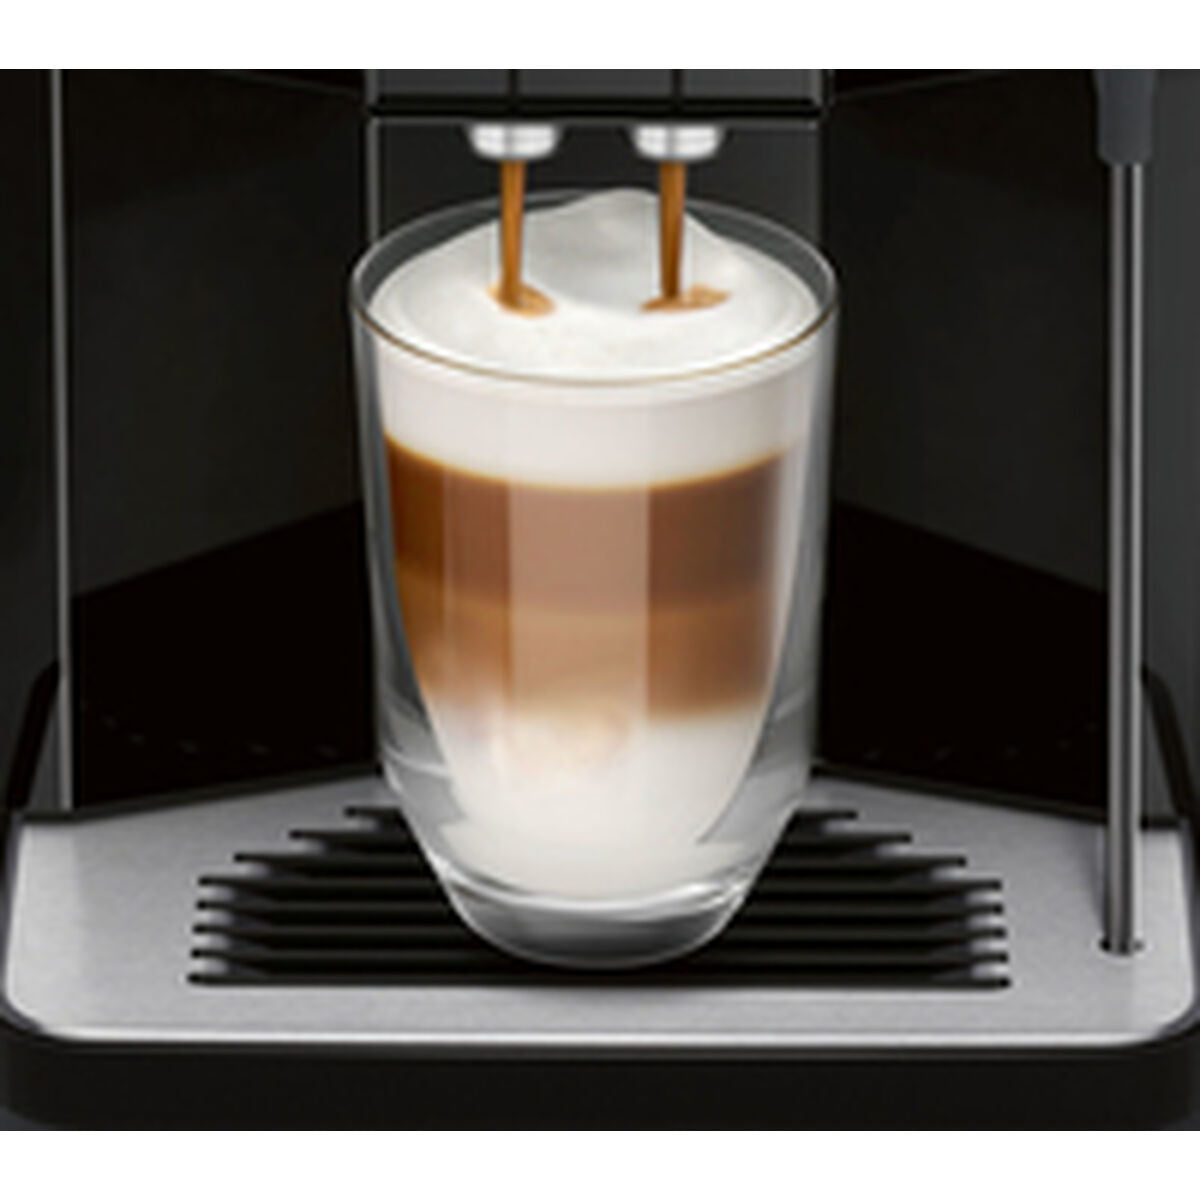 Superautomatische Kaffeemaschine Siemens AG TP501R09 Schwarz noir 1500 W 15 bar 1,7 L - CA International  